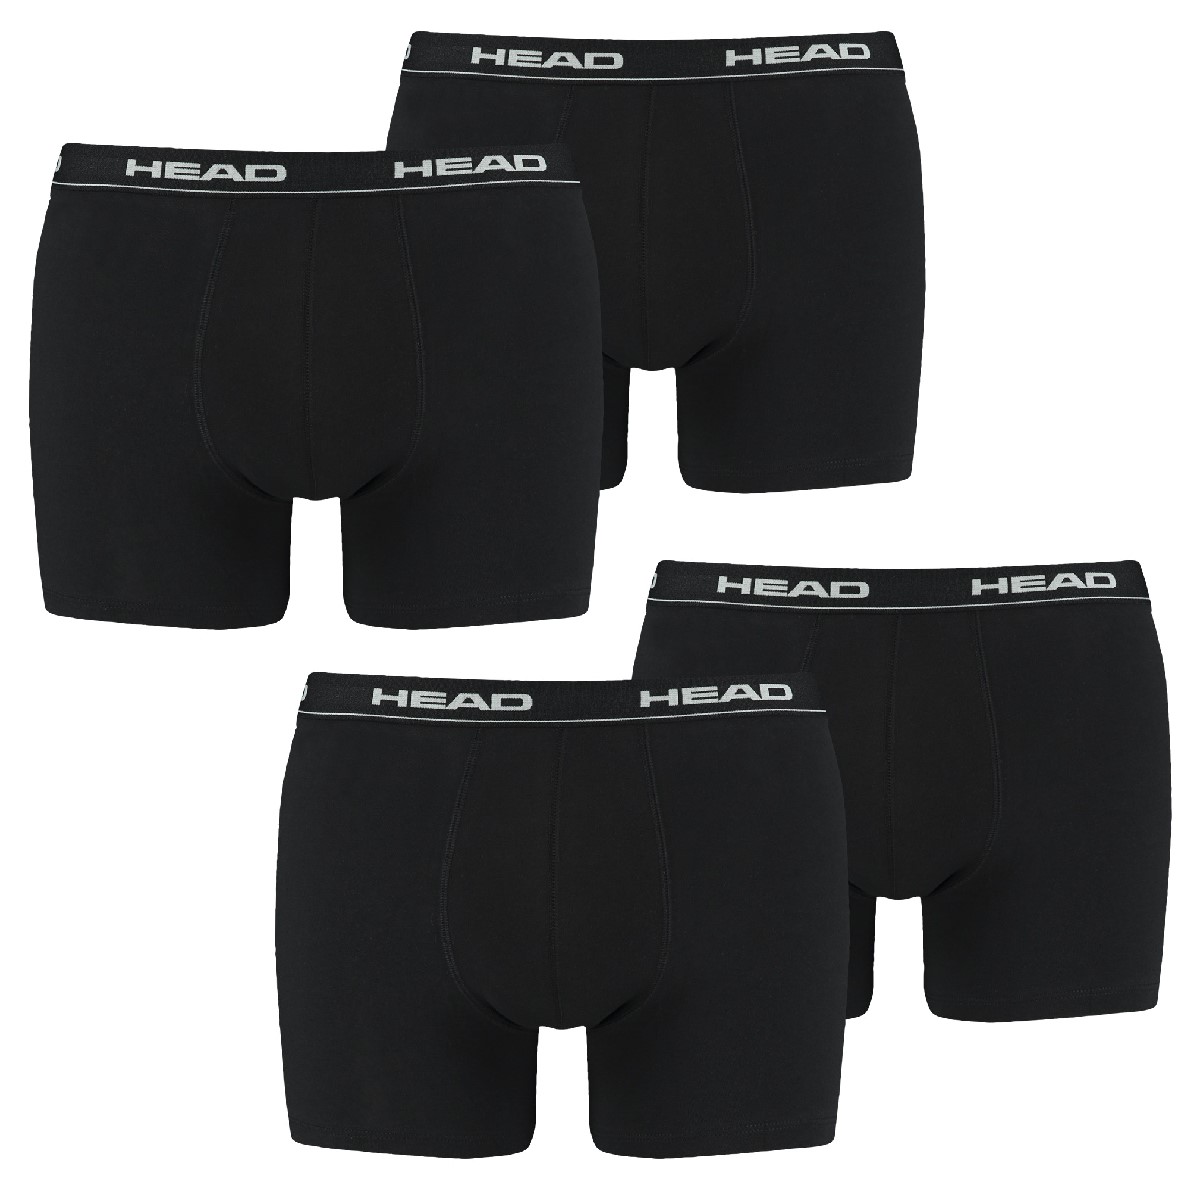 4 er Pack Head Herren Boxer Boxershorts Basic Pant Unterwäsche , Bekleidungsgröße:XL, Farbe:200 - black